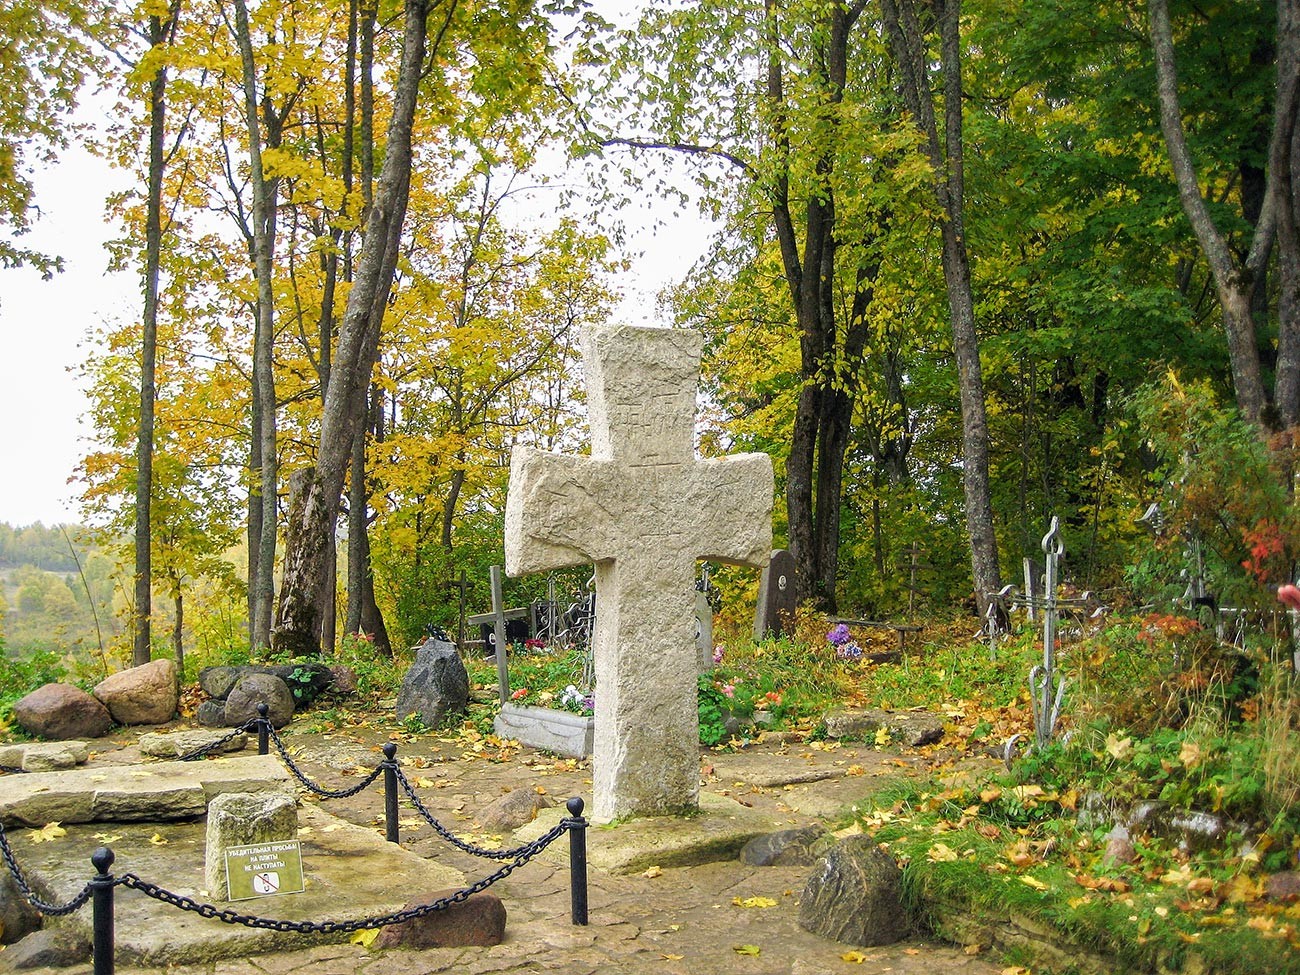 Croix de Trouvor, à Izborsk. Selon la légende, il s'agirait de la tombe de Trouvor, néanmoins, les chercheurs affirment qu'elle a été installée plusieurs siècles après la mort supposée de ce personnage. Les habitants l'auraient érigée à l'emplacement de l'ancienne ville, en signe d'hommage.